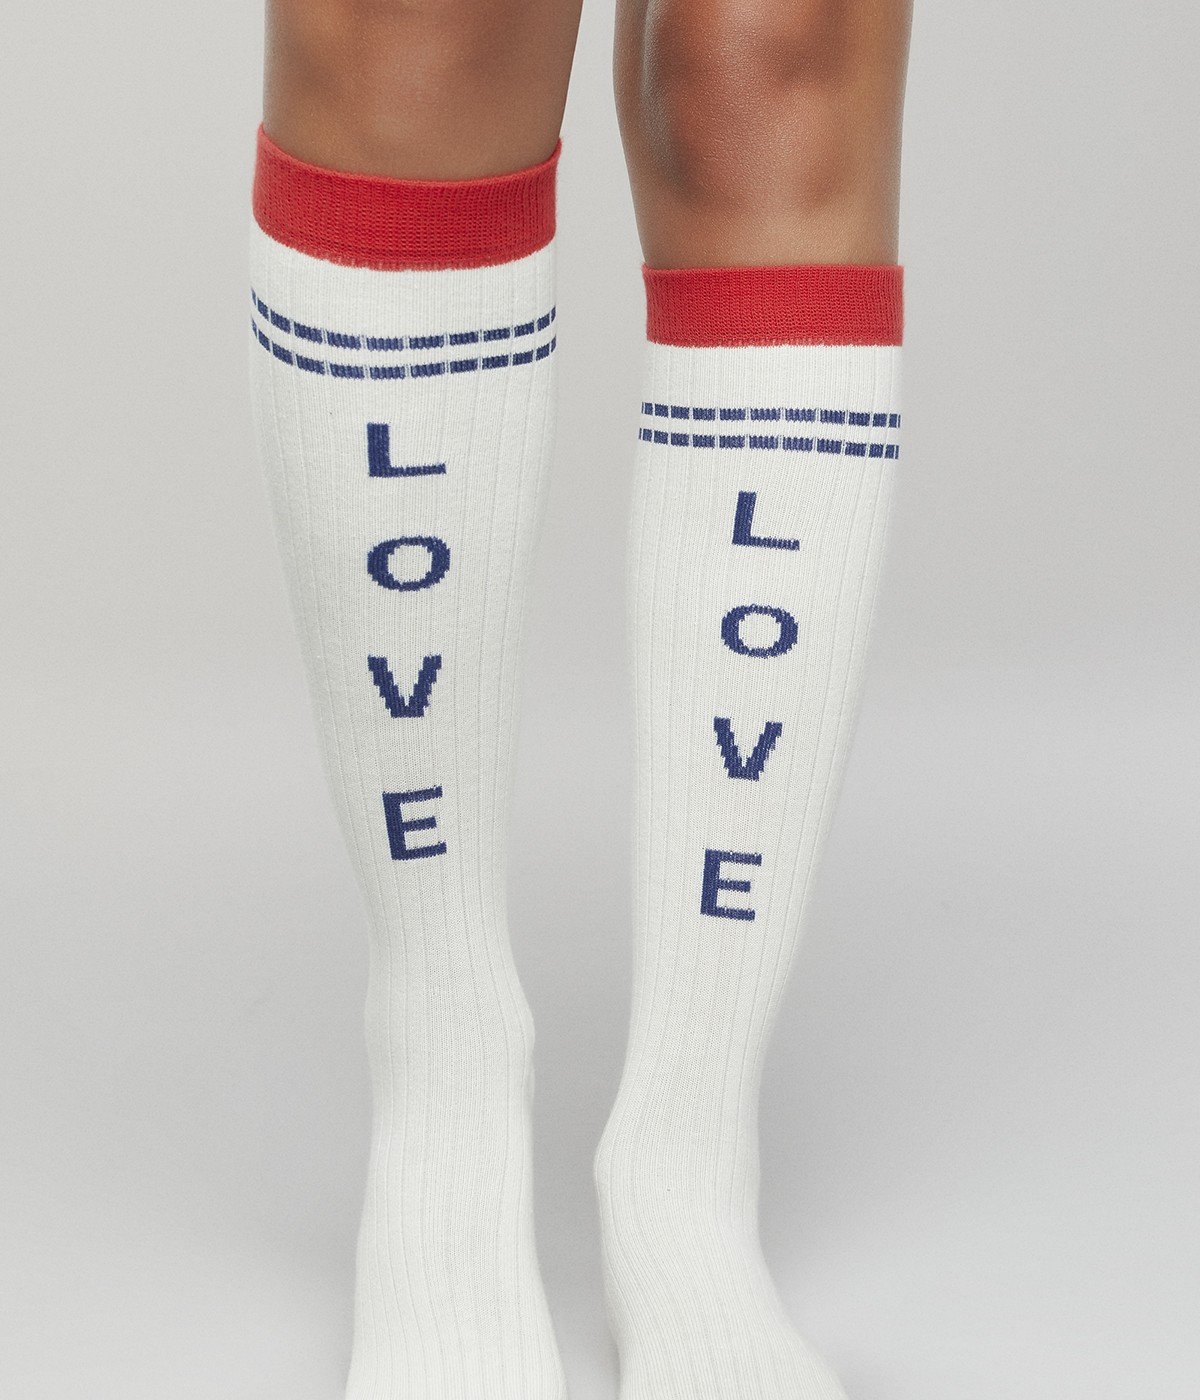 Ciorapi Pantalon Love